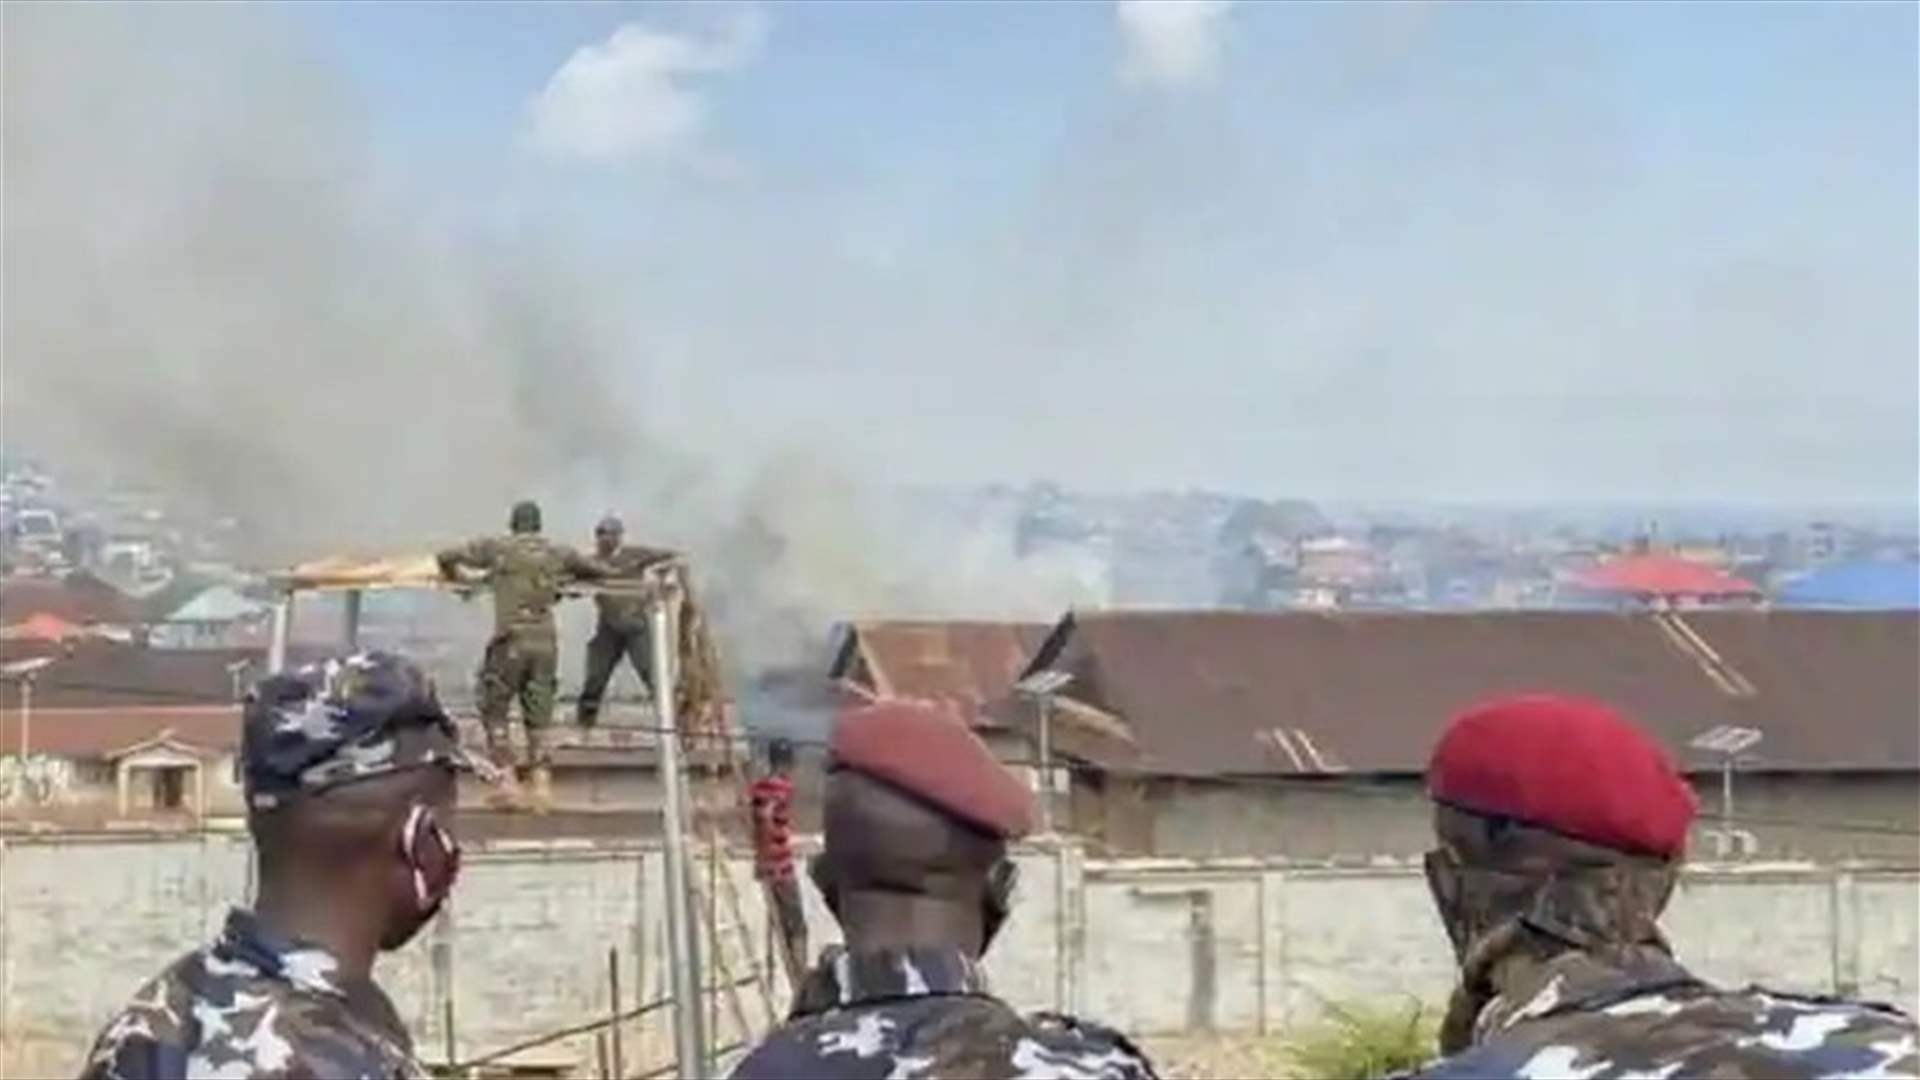 مقتل شرطيين في سيراليون خلال تظاهرات احتجاج على غلاء المعيشة